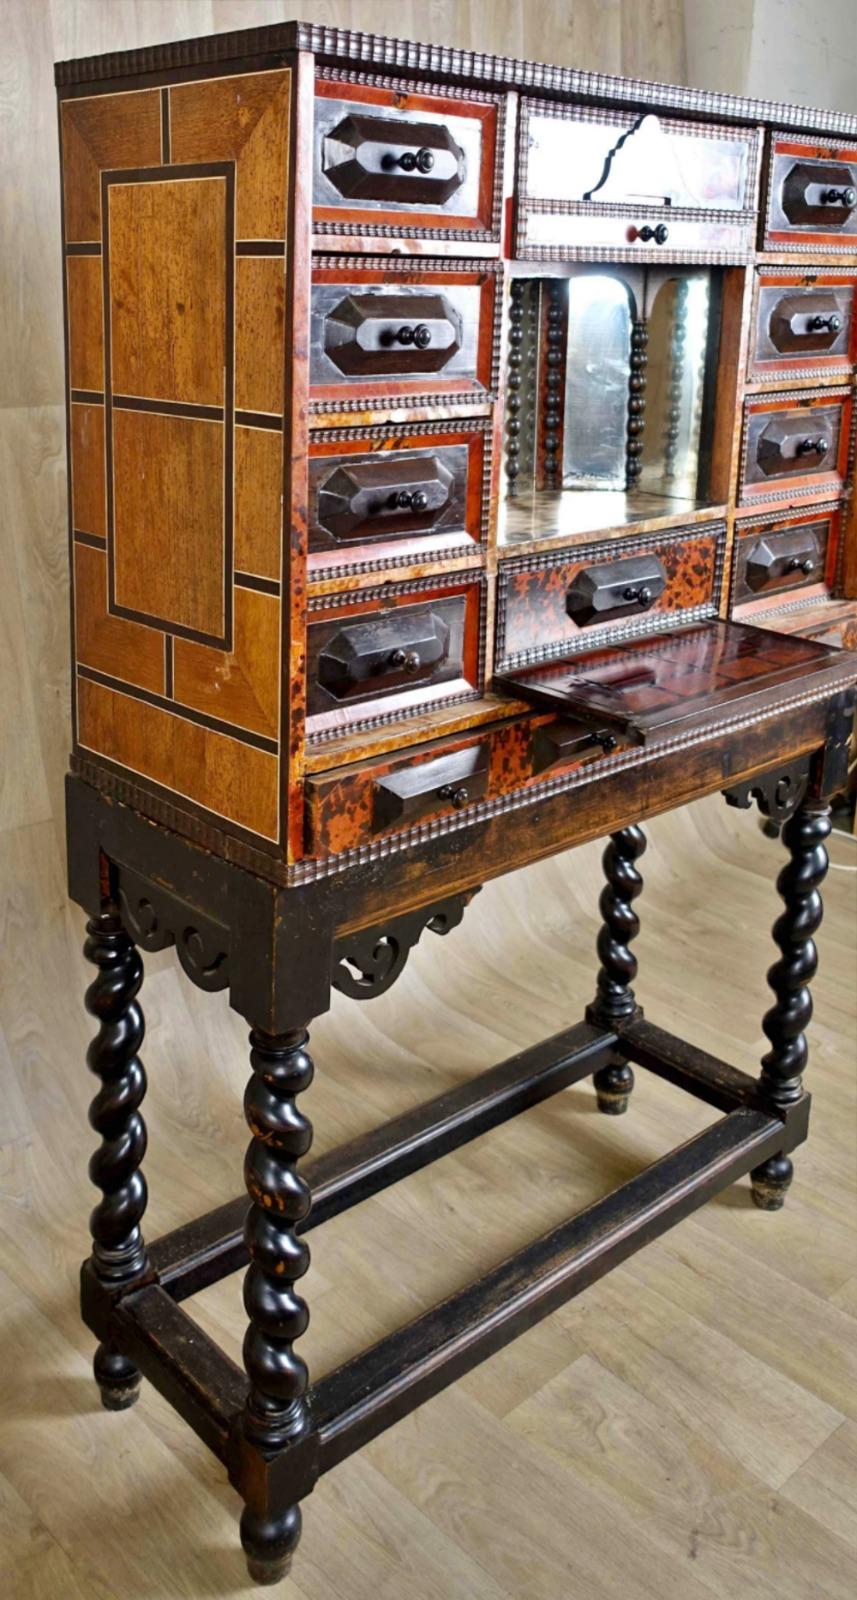 Cabinet flamand Anvers 17ème siècle


Il comporte dix tiroirs soulignés de moulures guillochées et ornés de petits boutons tournés. 

Elle est décorée, en son centre, d'un théâtre à fond de miroir et damier en os et bois de rose. 

La ceinture